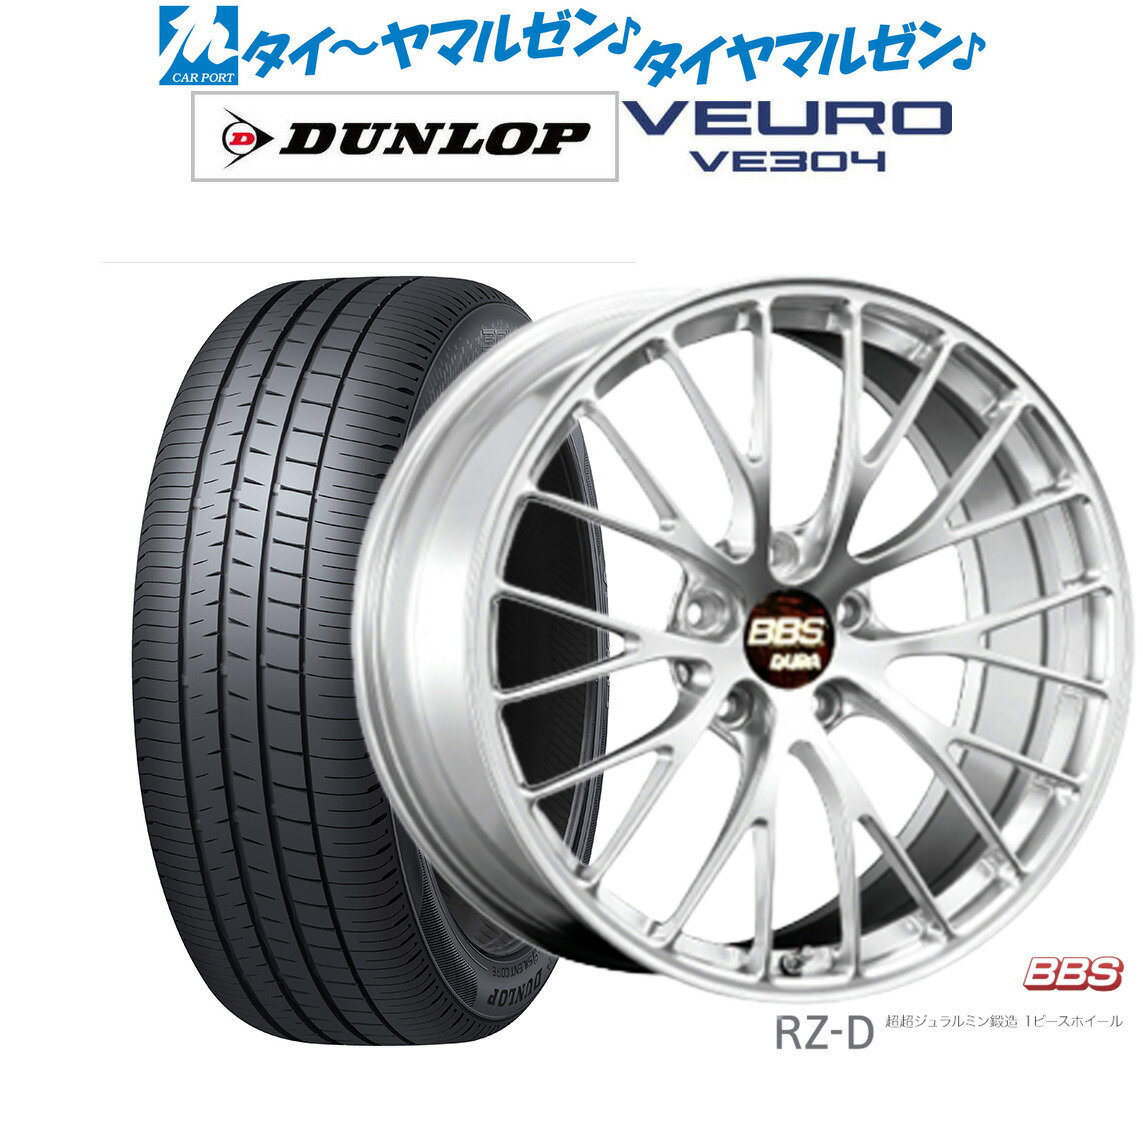 新品 サマータイヤ ホイール4本セットBBS JAPAN RZ-D19インチ 8.5Jダンロップ VEURO ビューロ VE304225/55R19